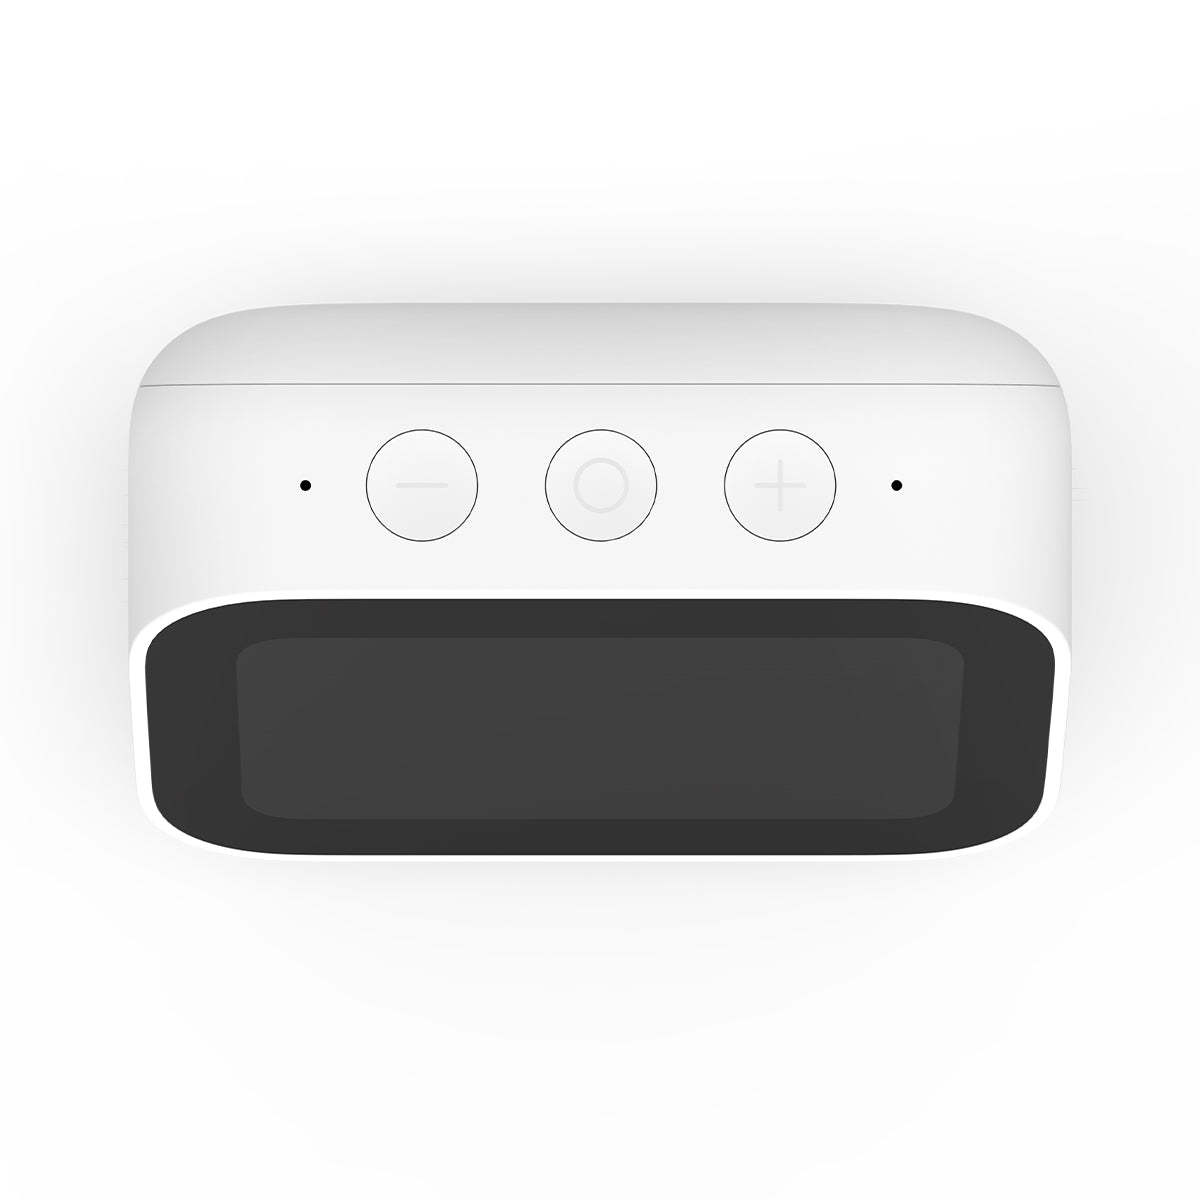 Xiaomi Mi Smart Clock with Google Assistant & Speaker